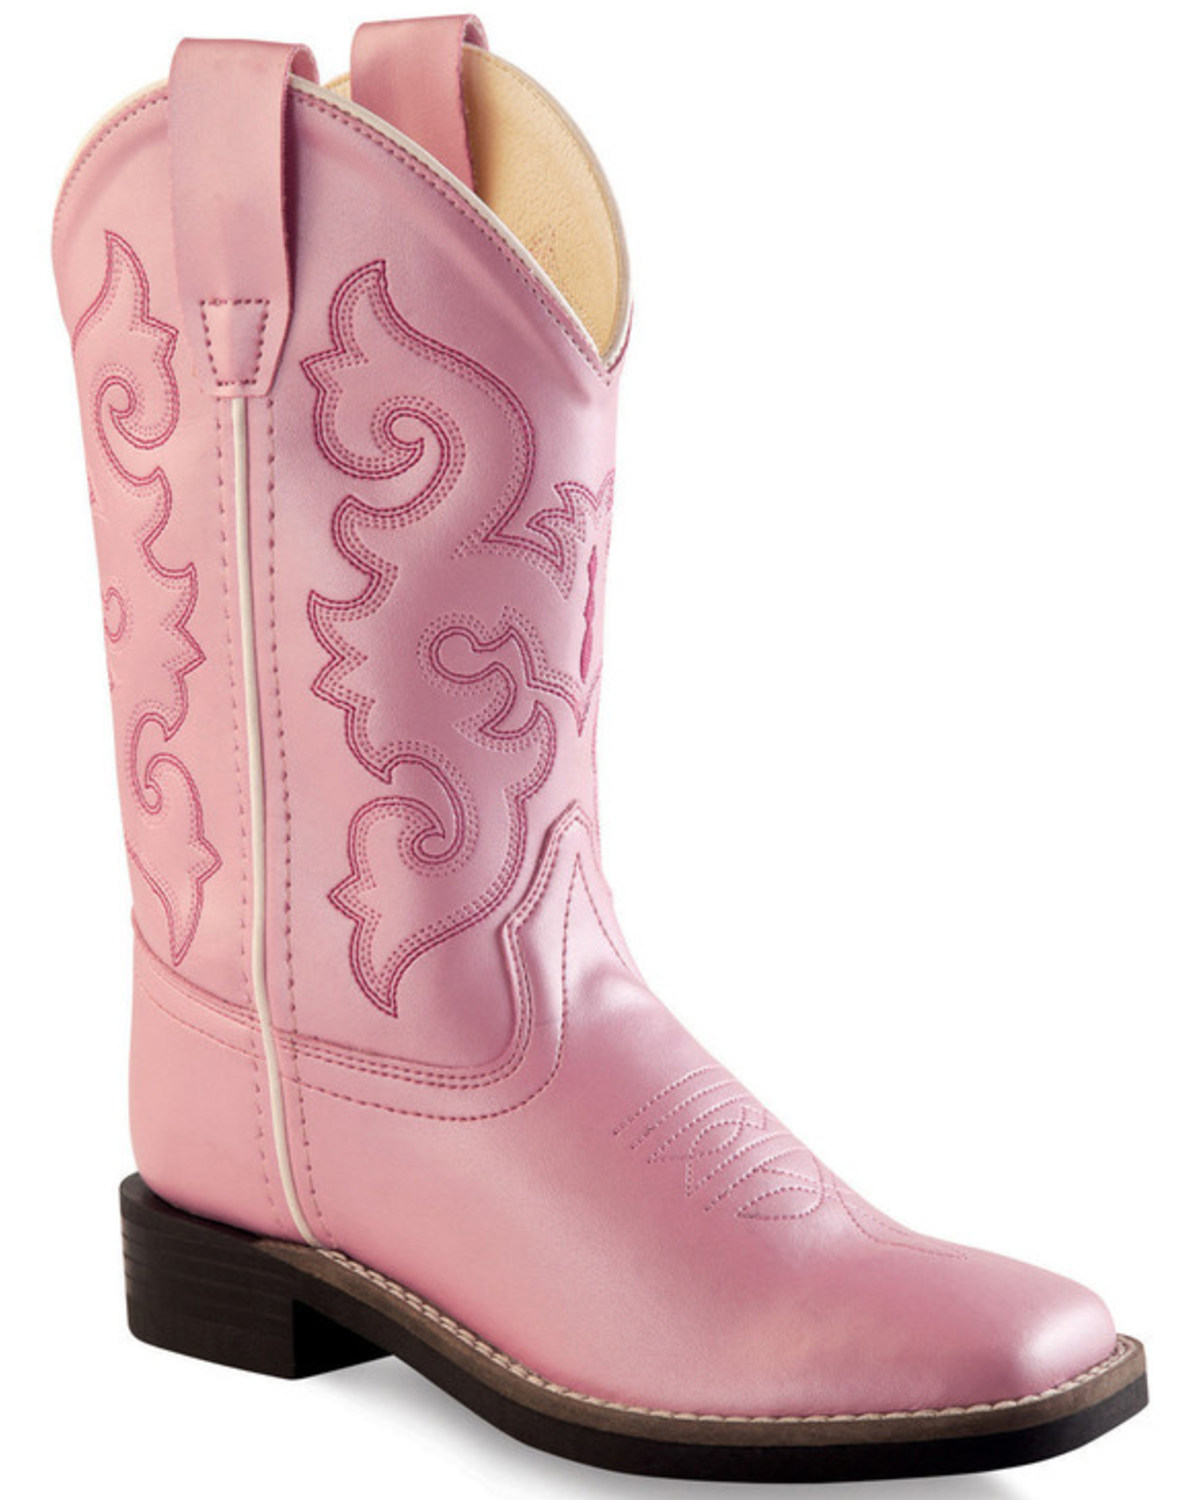 Little Girls Pink Cowboy Boots Size Chart